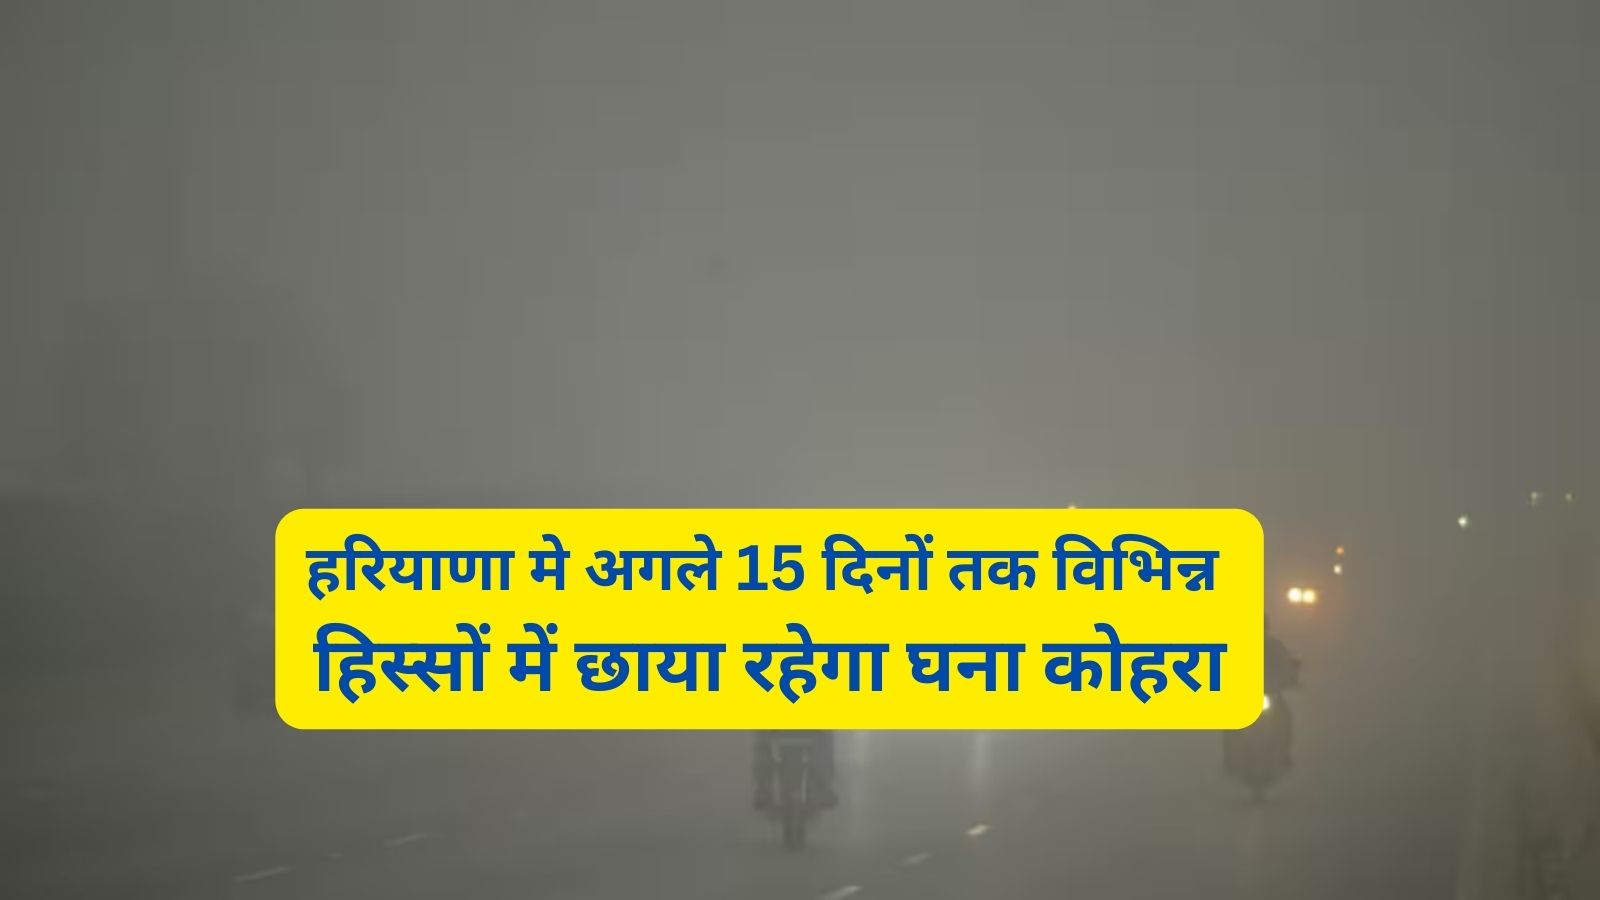 Haryana Weather:हरियाणा मे अगले 15 दिनों तक विभिन्न हिस्सों में छाया रहेगा घना कोहरा